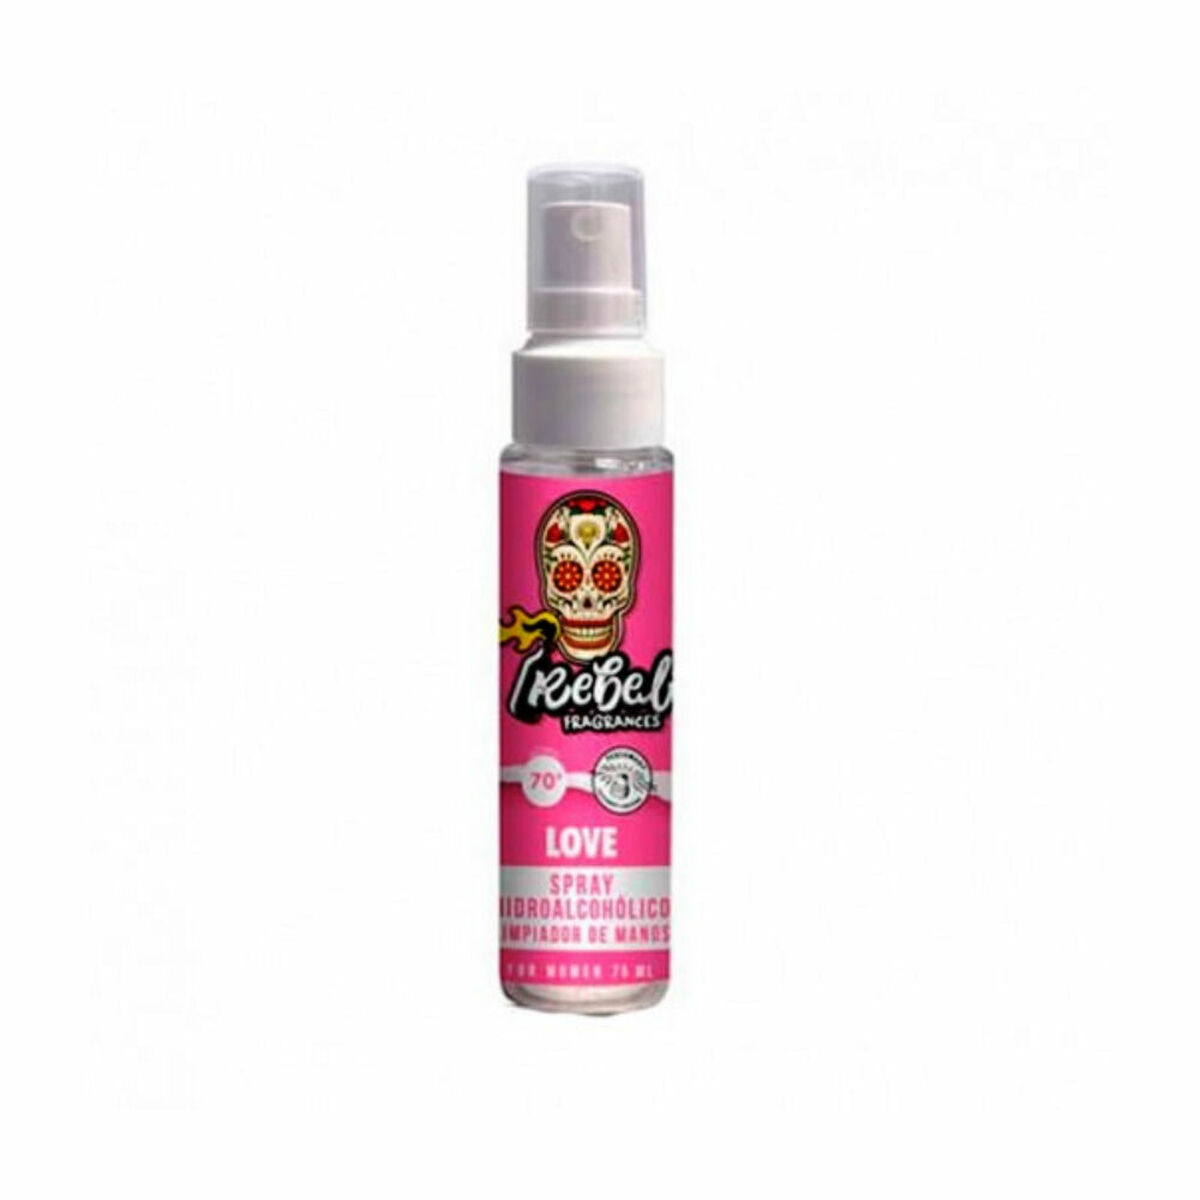 Osta tuote Sterilisoiva käsivoide Rebel Love Spray 30 ml (75 ml) verkkokaupastamme Korhone: Parfyymit & Kosmetiikka 10% alennuksella koodilla KORHONE